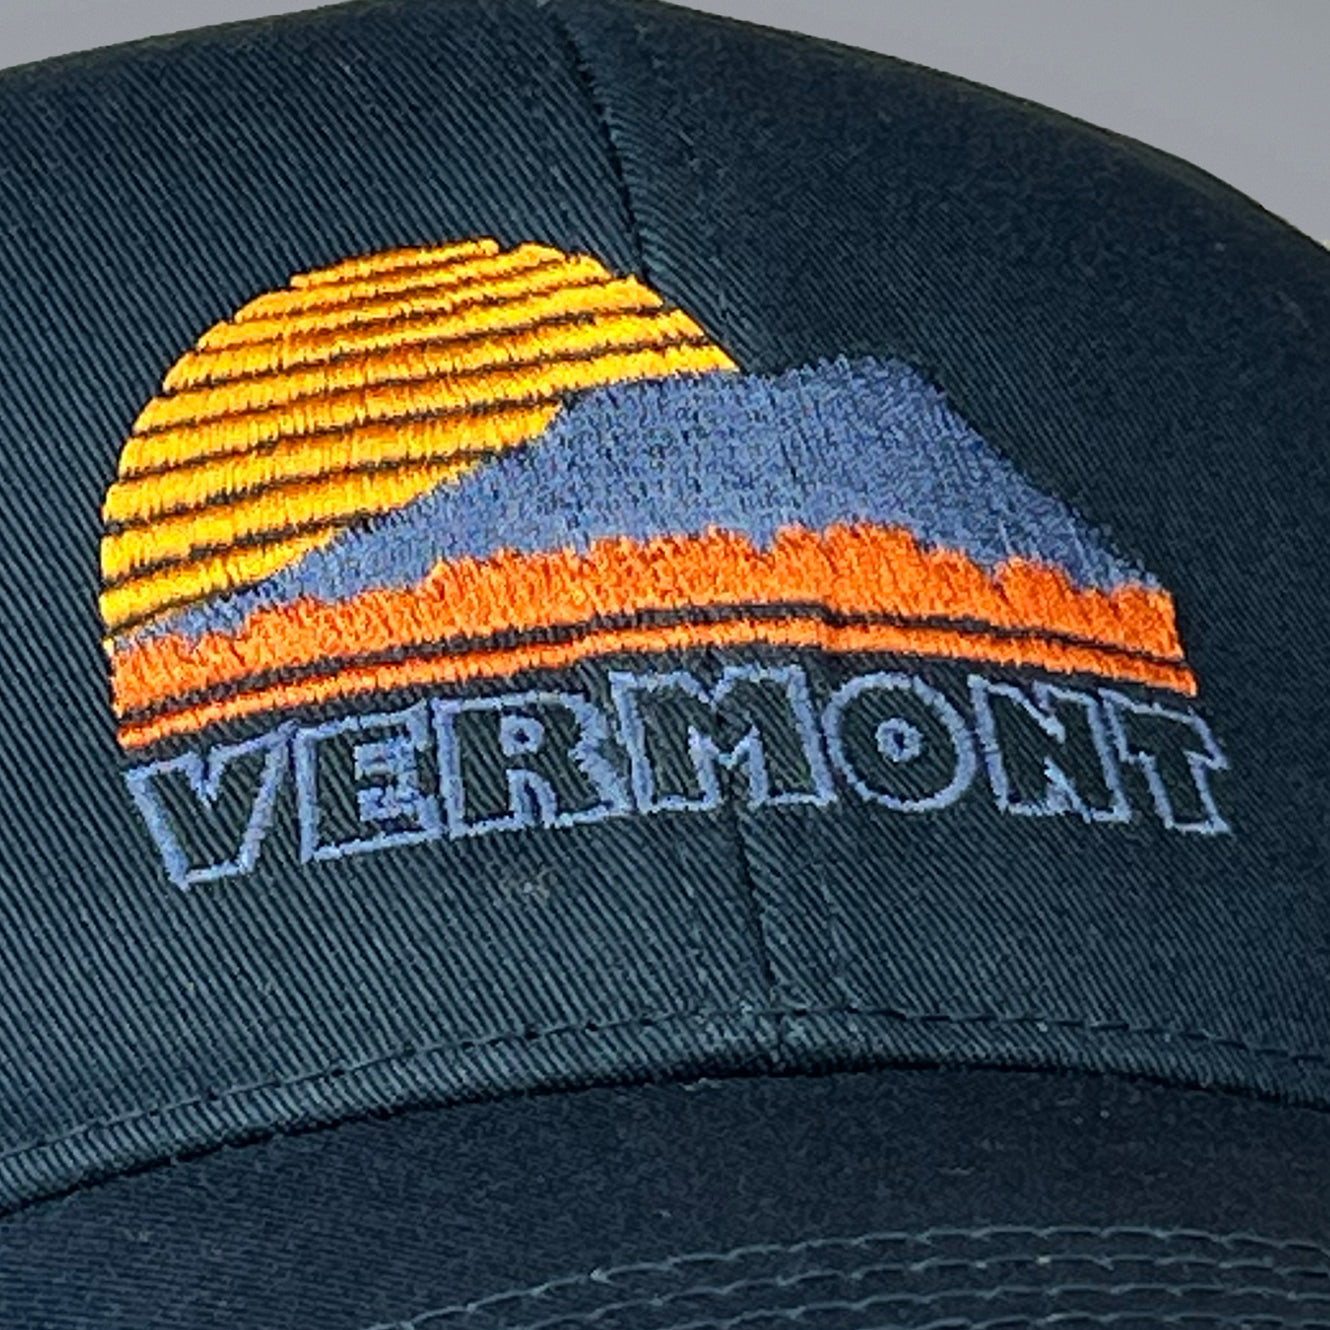 Vermont Sunset trucker hat in blue.